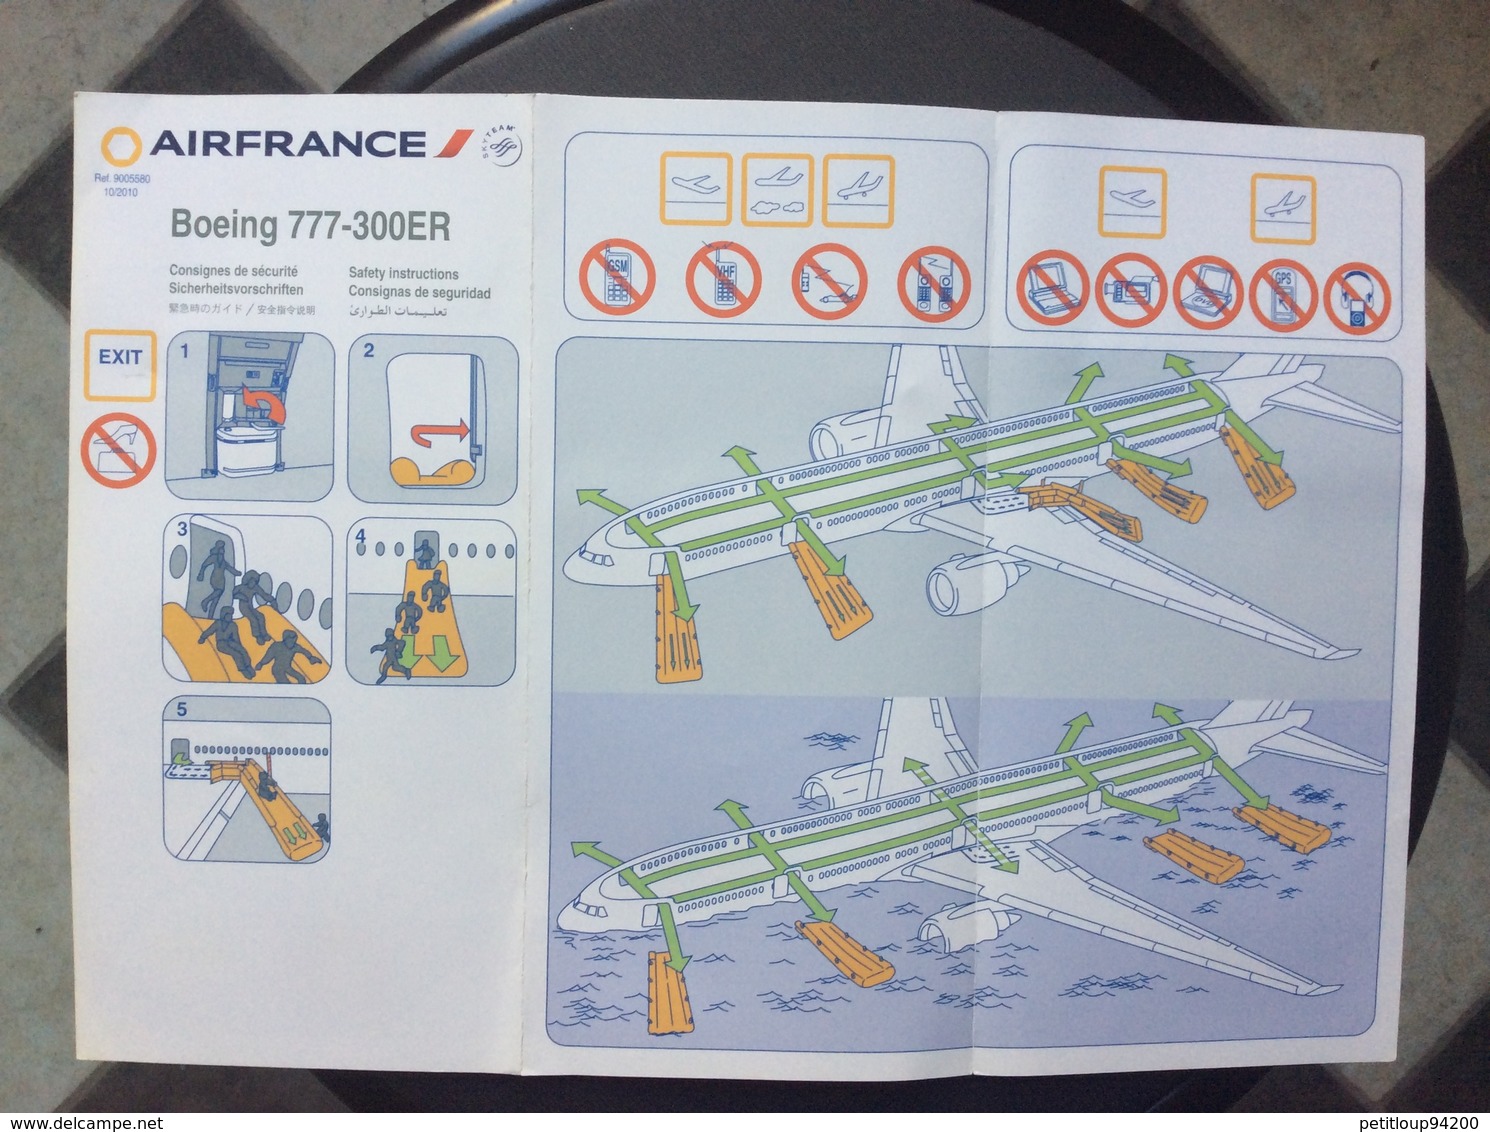 CONSIGNES DE SECURITE / SAFETY CARD  *Boeing B777-300 ER  AIR FRANCE - Scheda Di Sicurezza